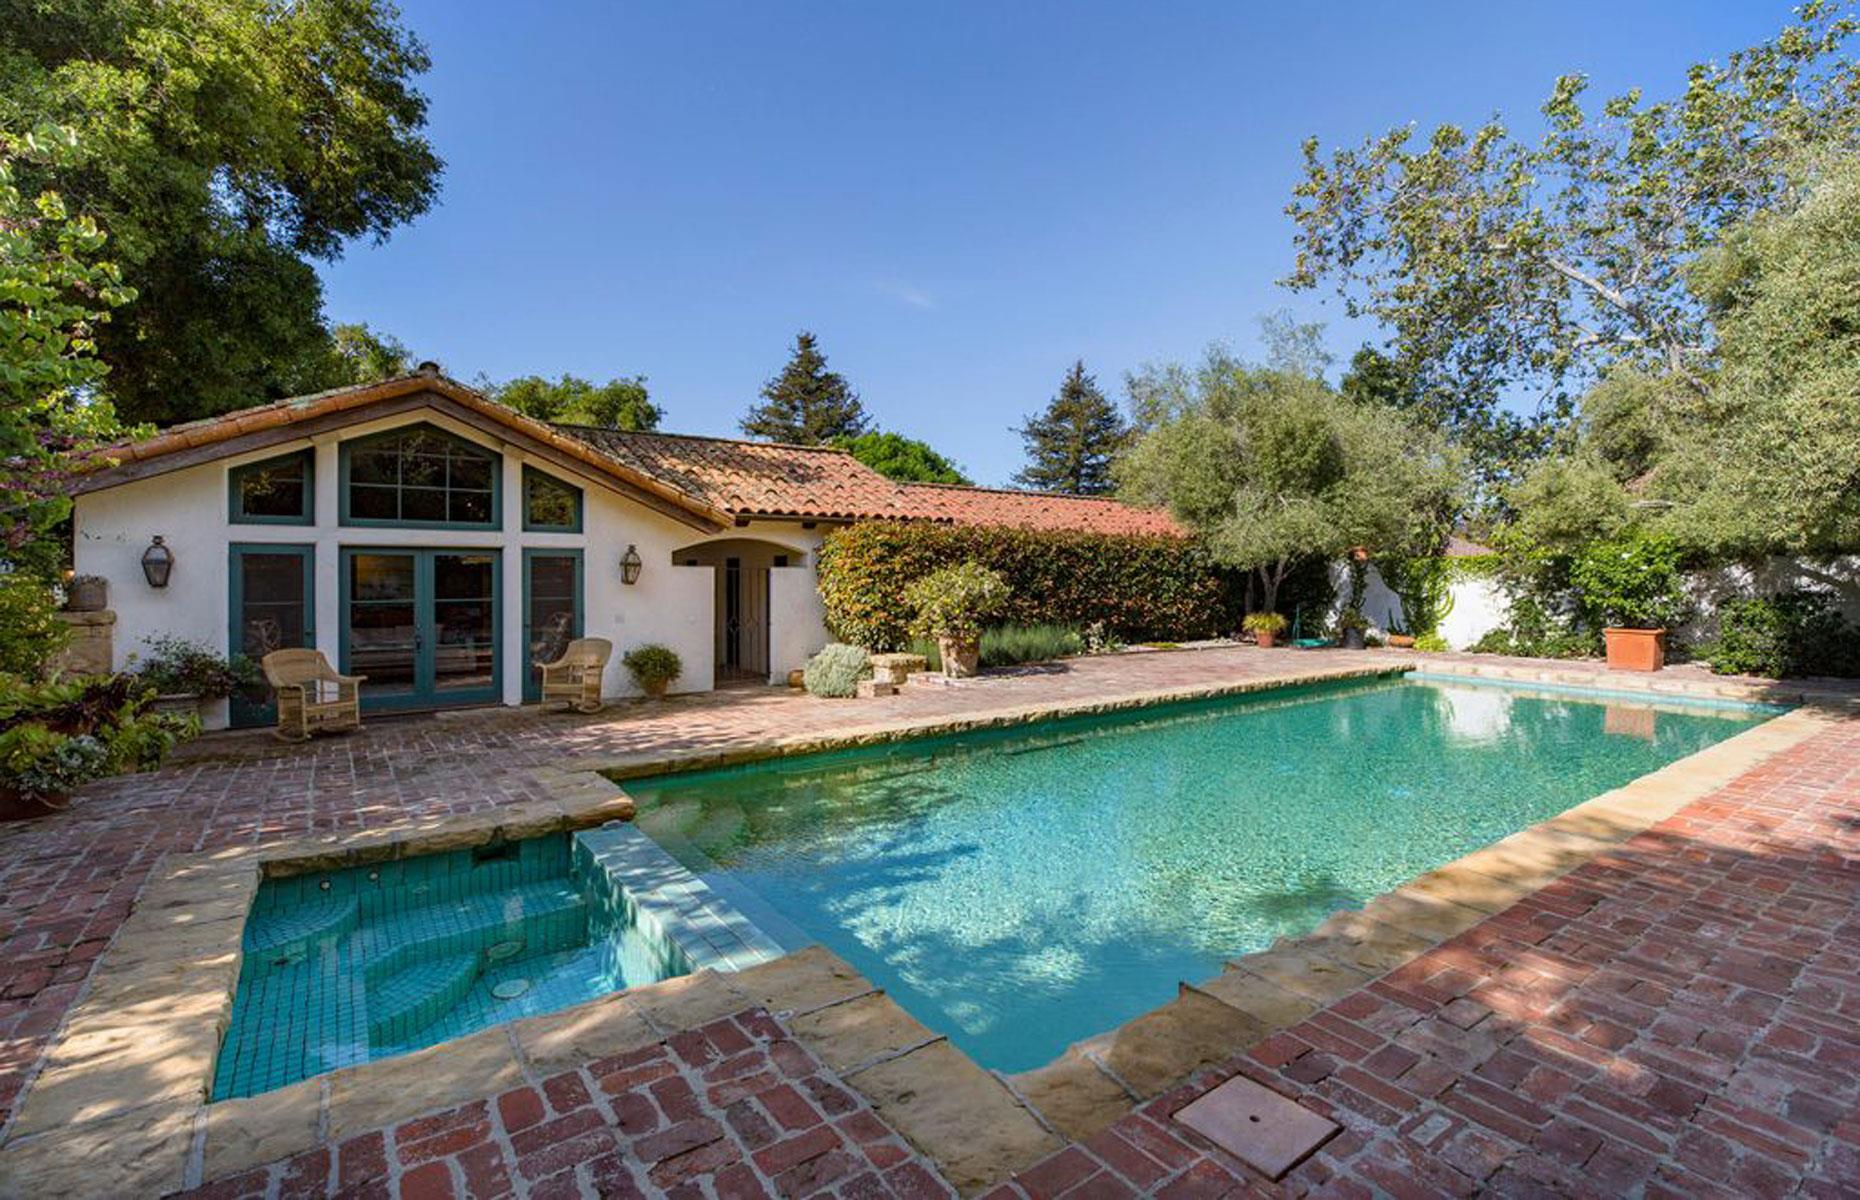 Oprah's Spanish Revival estate, Montecito, California